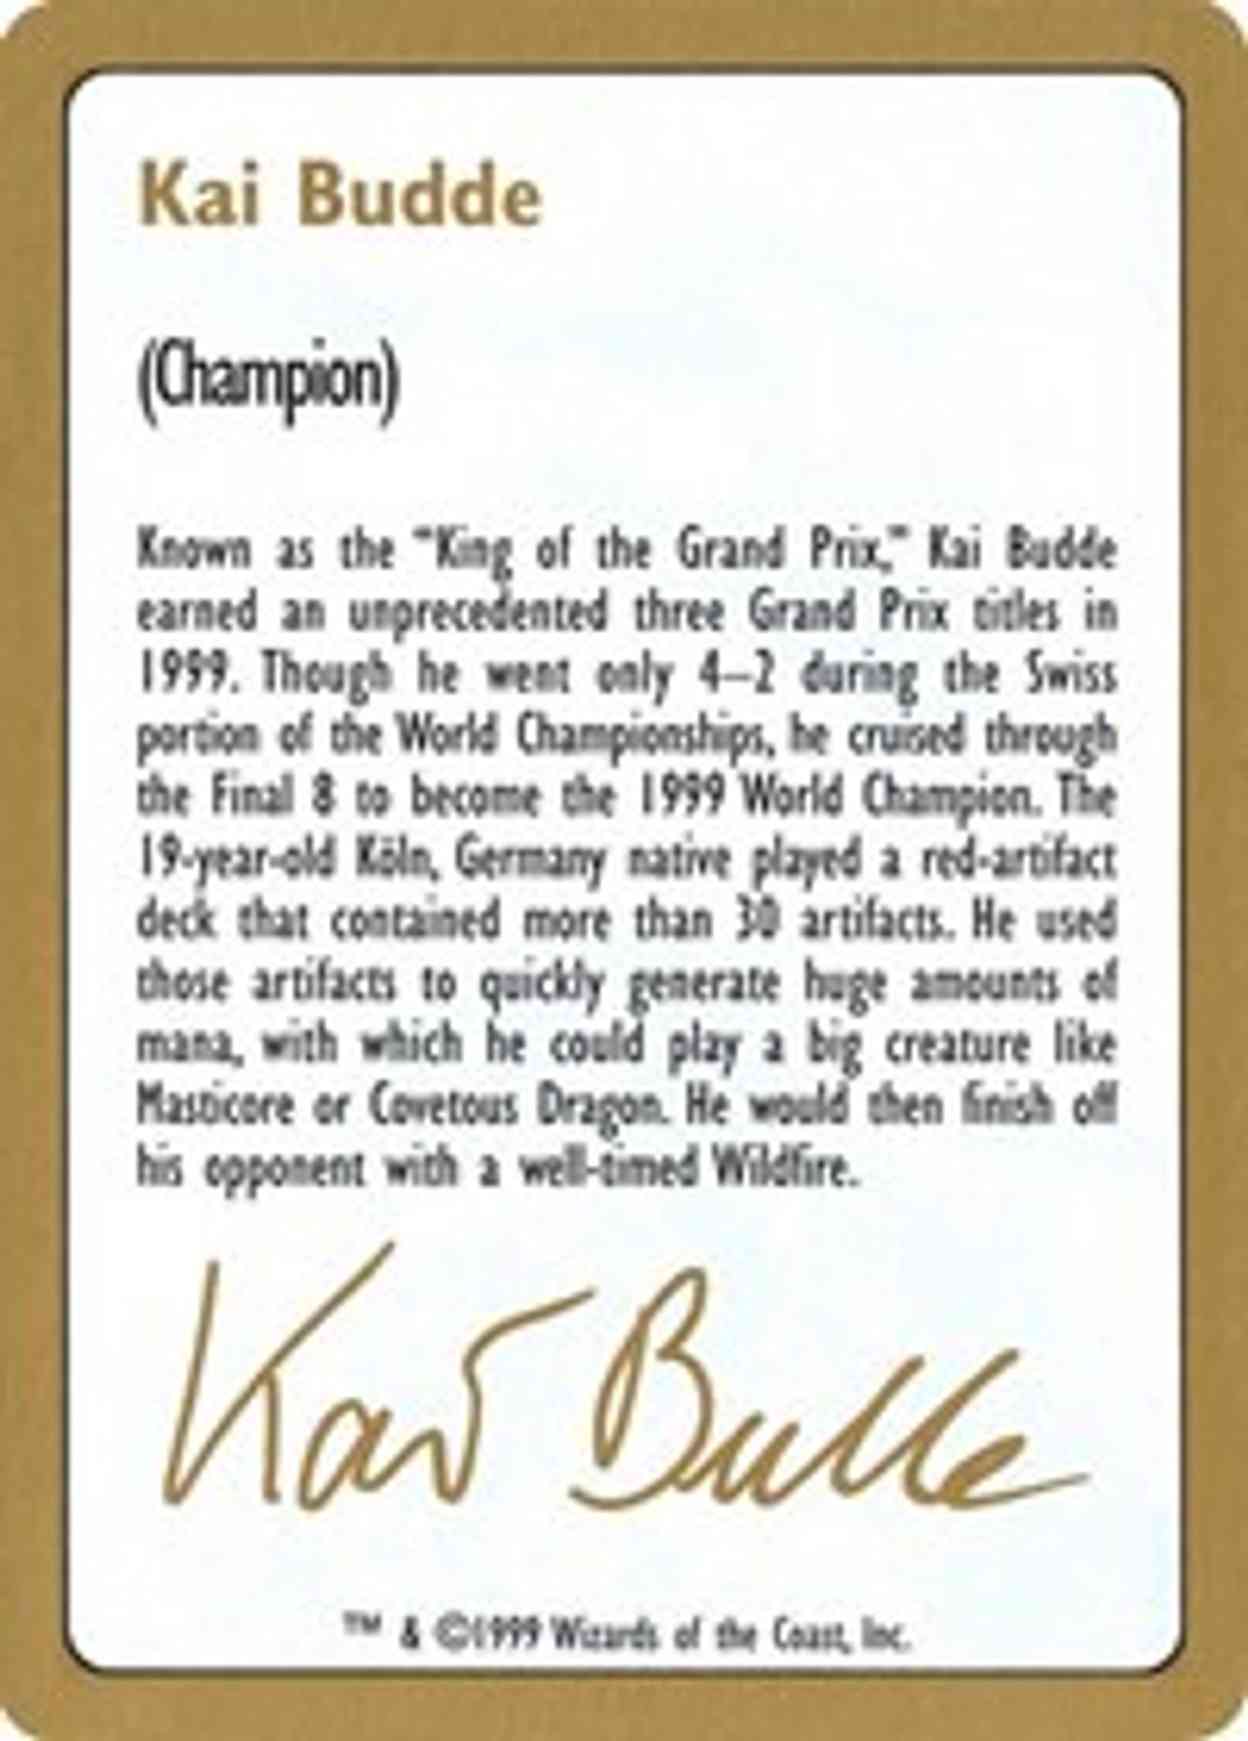 1999 Kai Budde Biography Card magic card front